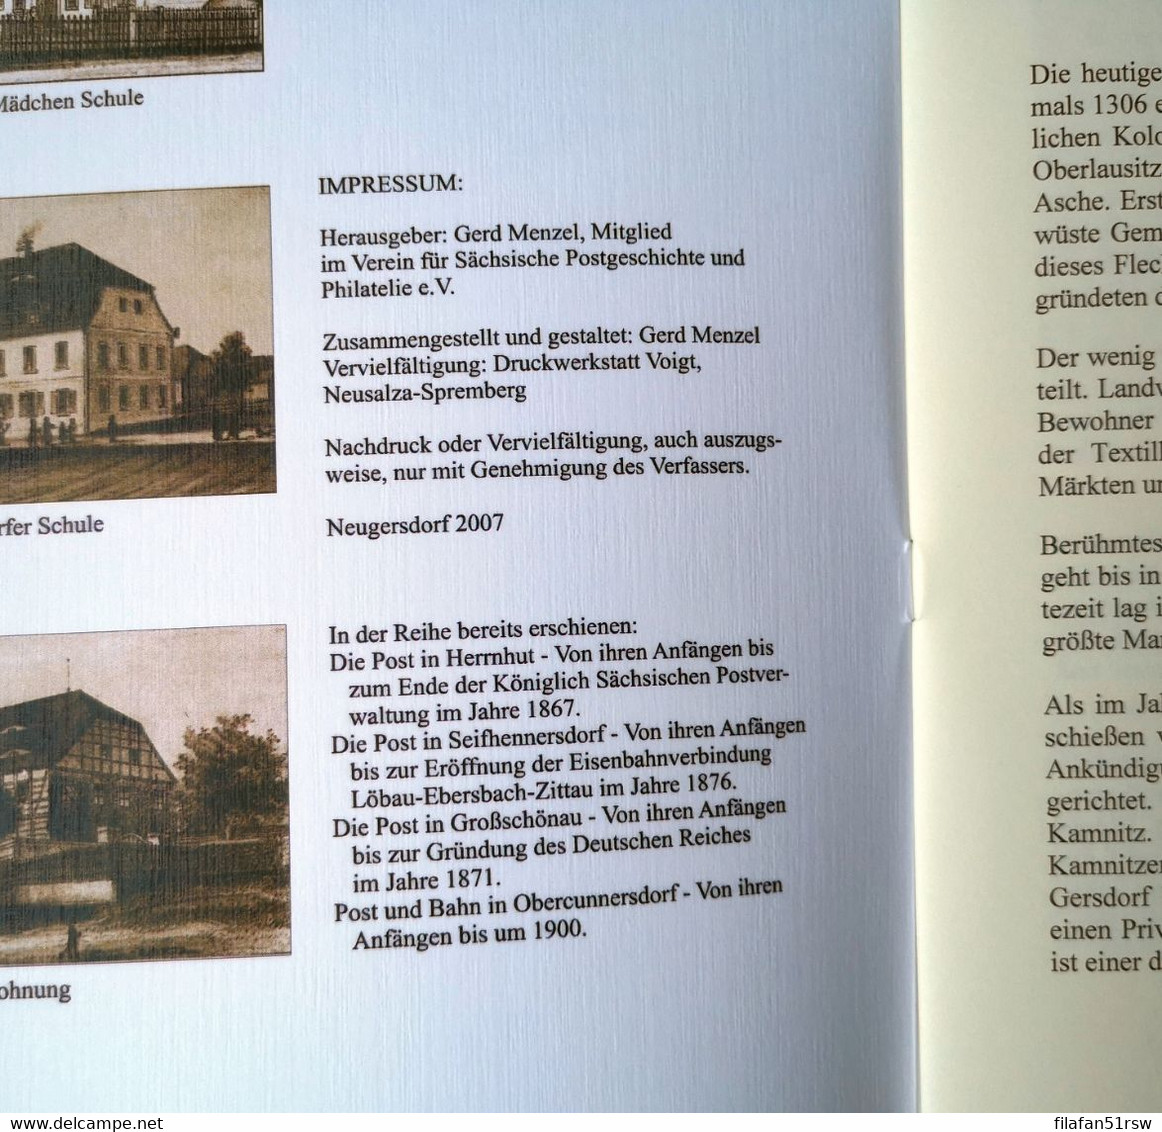 Die Post In Neugersdorf, Von Ihren Anfängen Bis In Die Siebziger Jahre Des 19. Jhdt. - Philatelie Und Postgeschichte